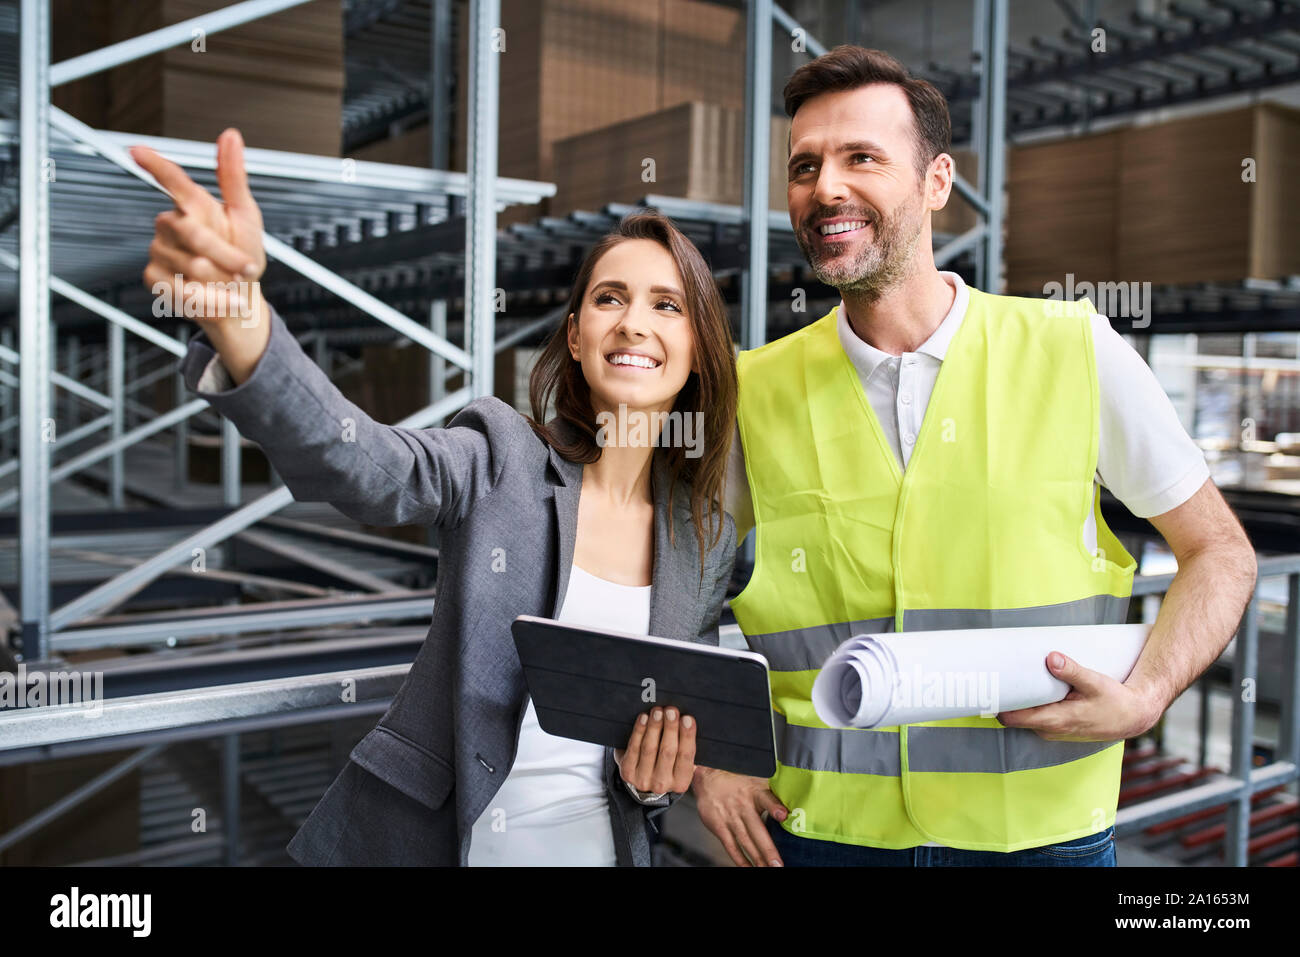 Smiling businesswoman talking to man in gilet réfléchissant dans une usine Banque D'Images